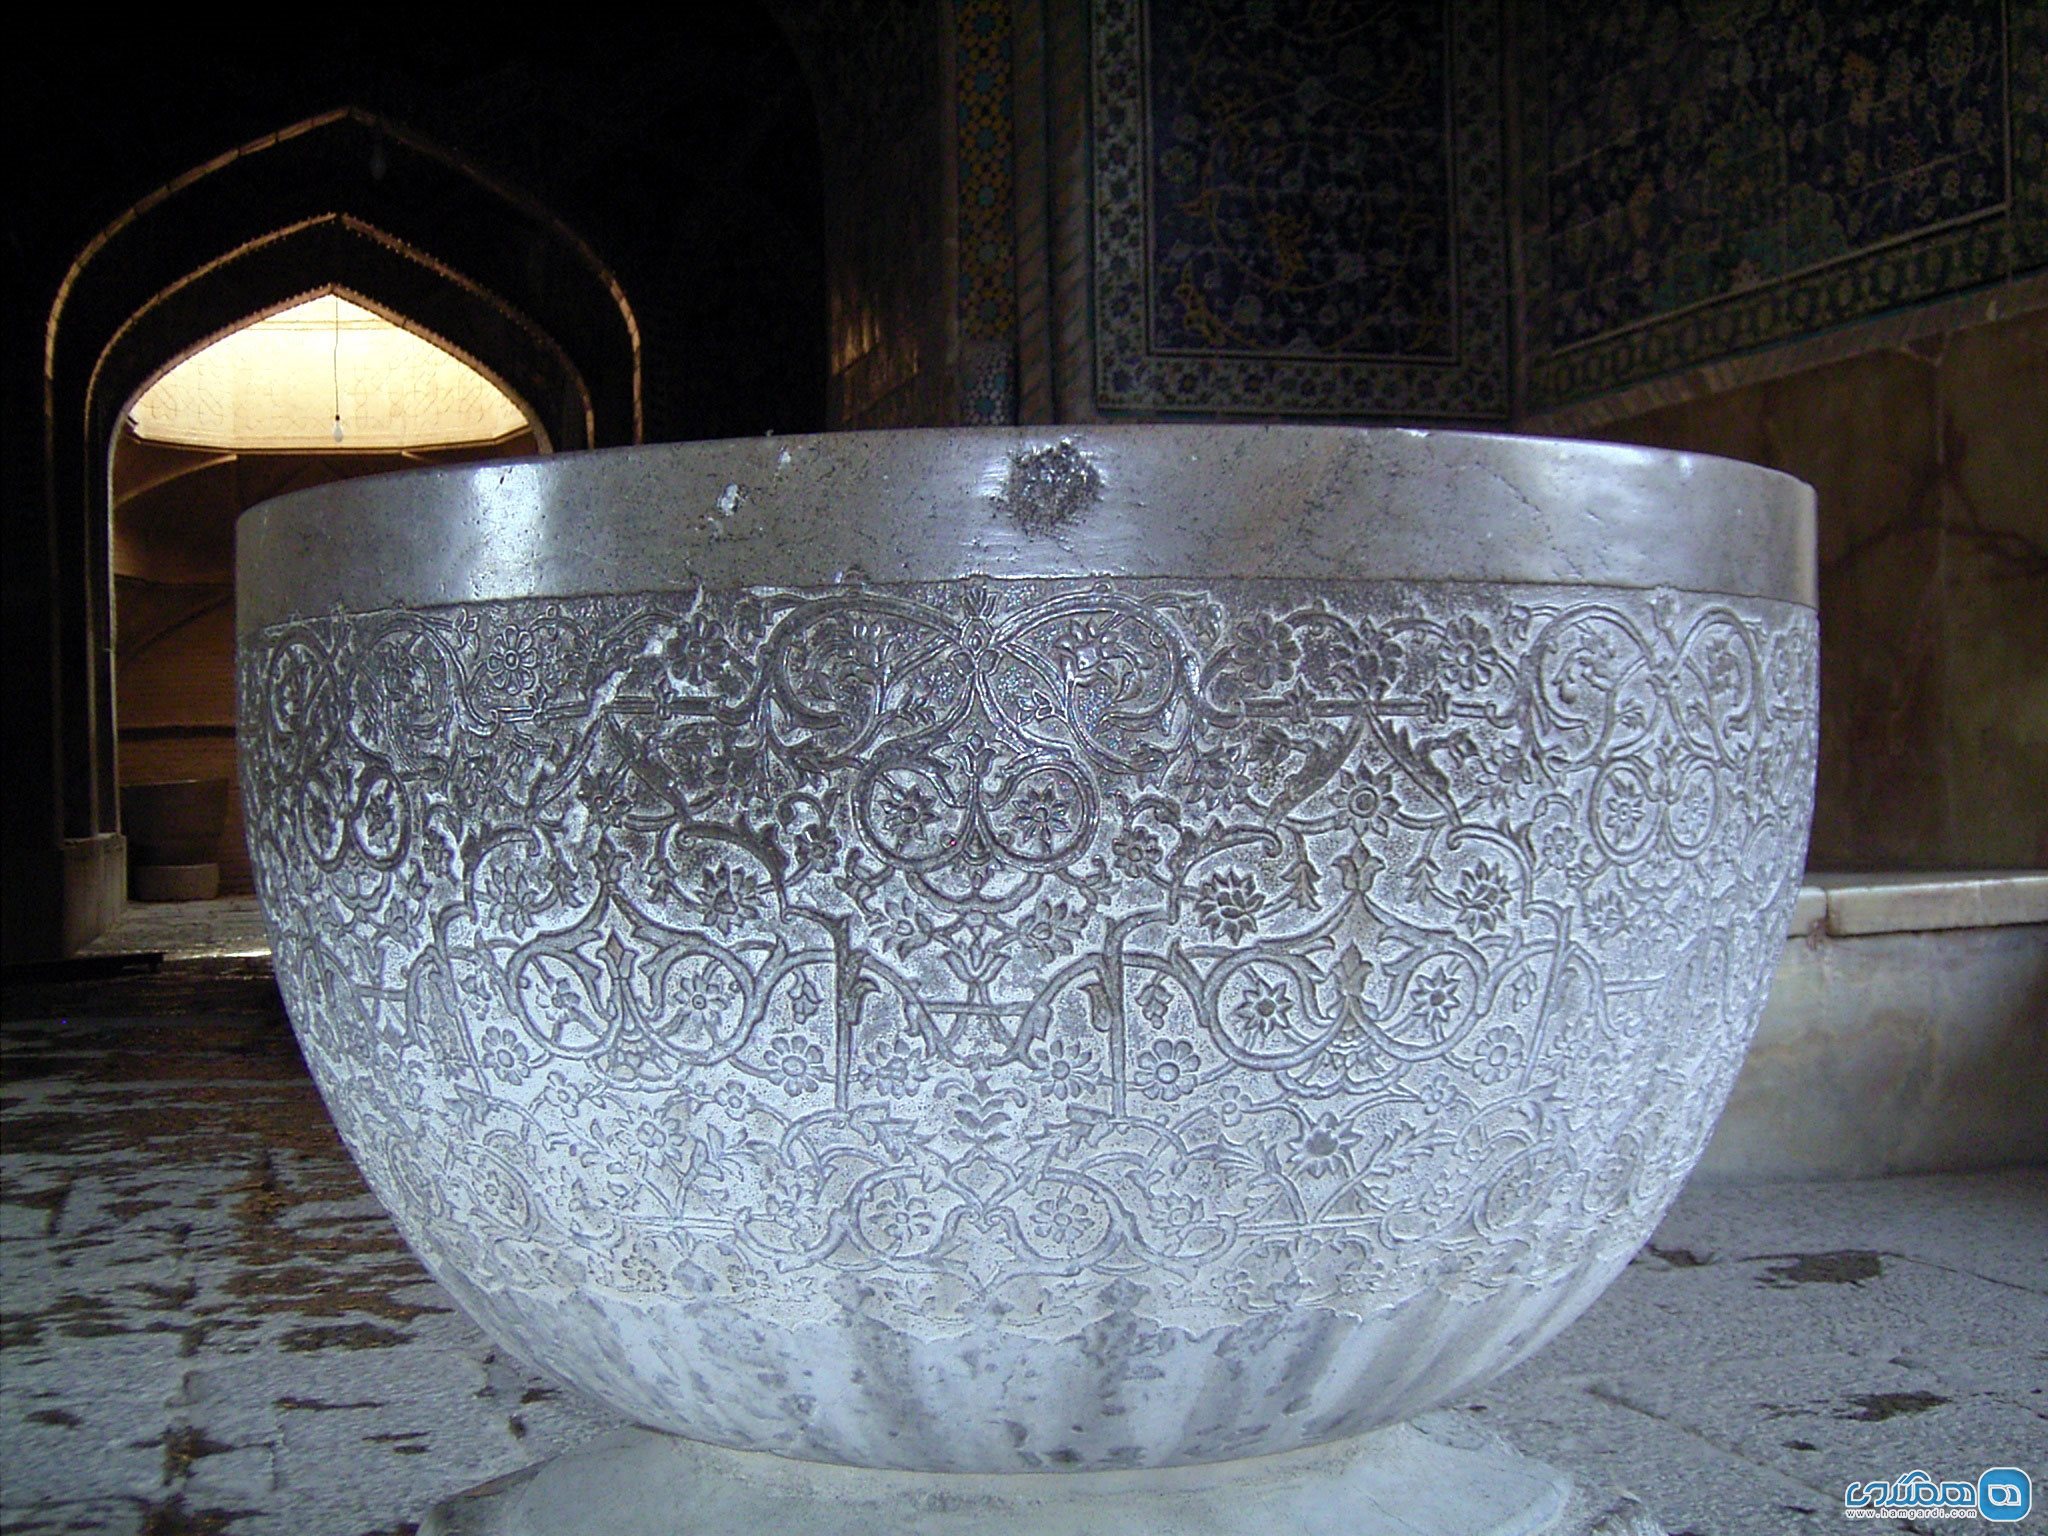 سنگ آب در مسجد اصفهان